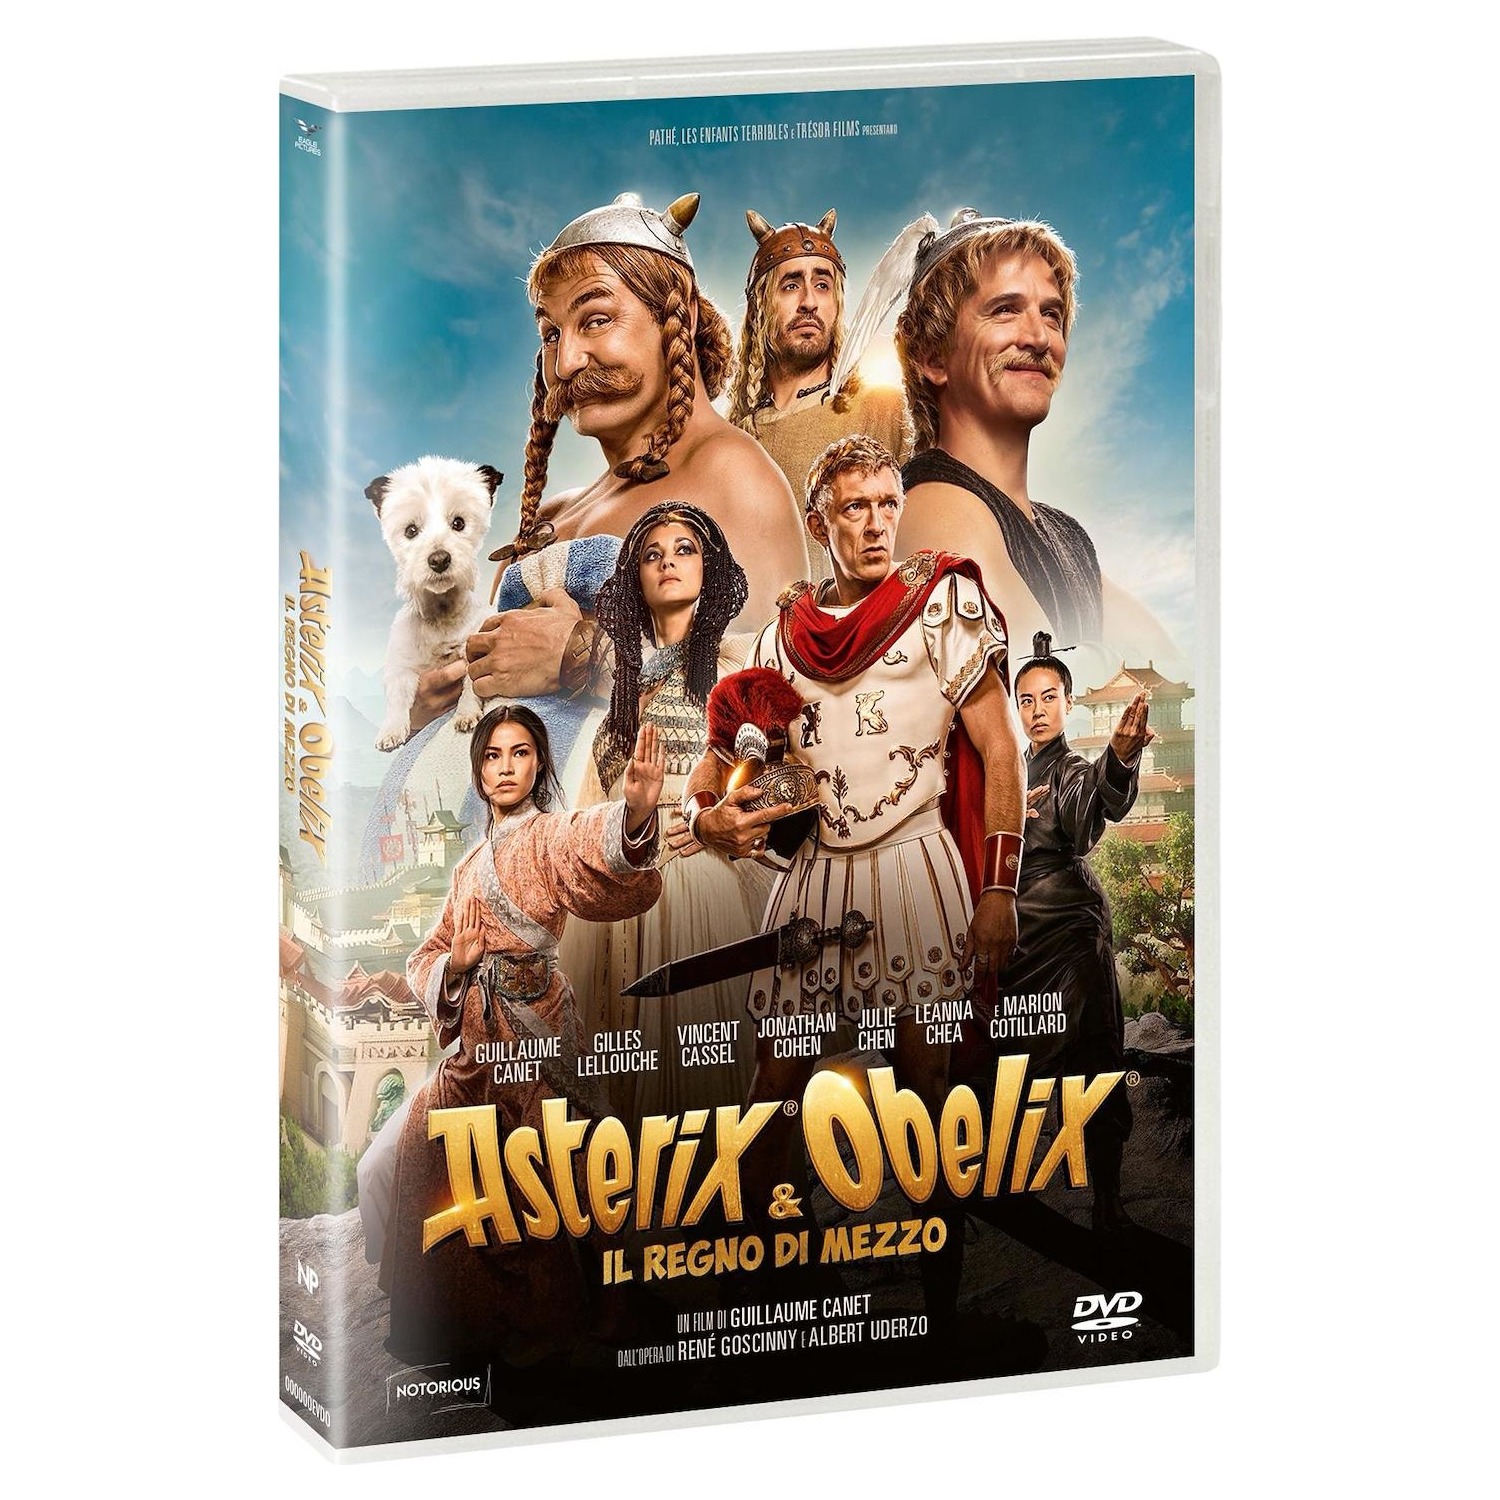 Immagine per DVD Asterix & Obelix - Il Regno di mezzo da DIMOStore